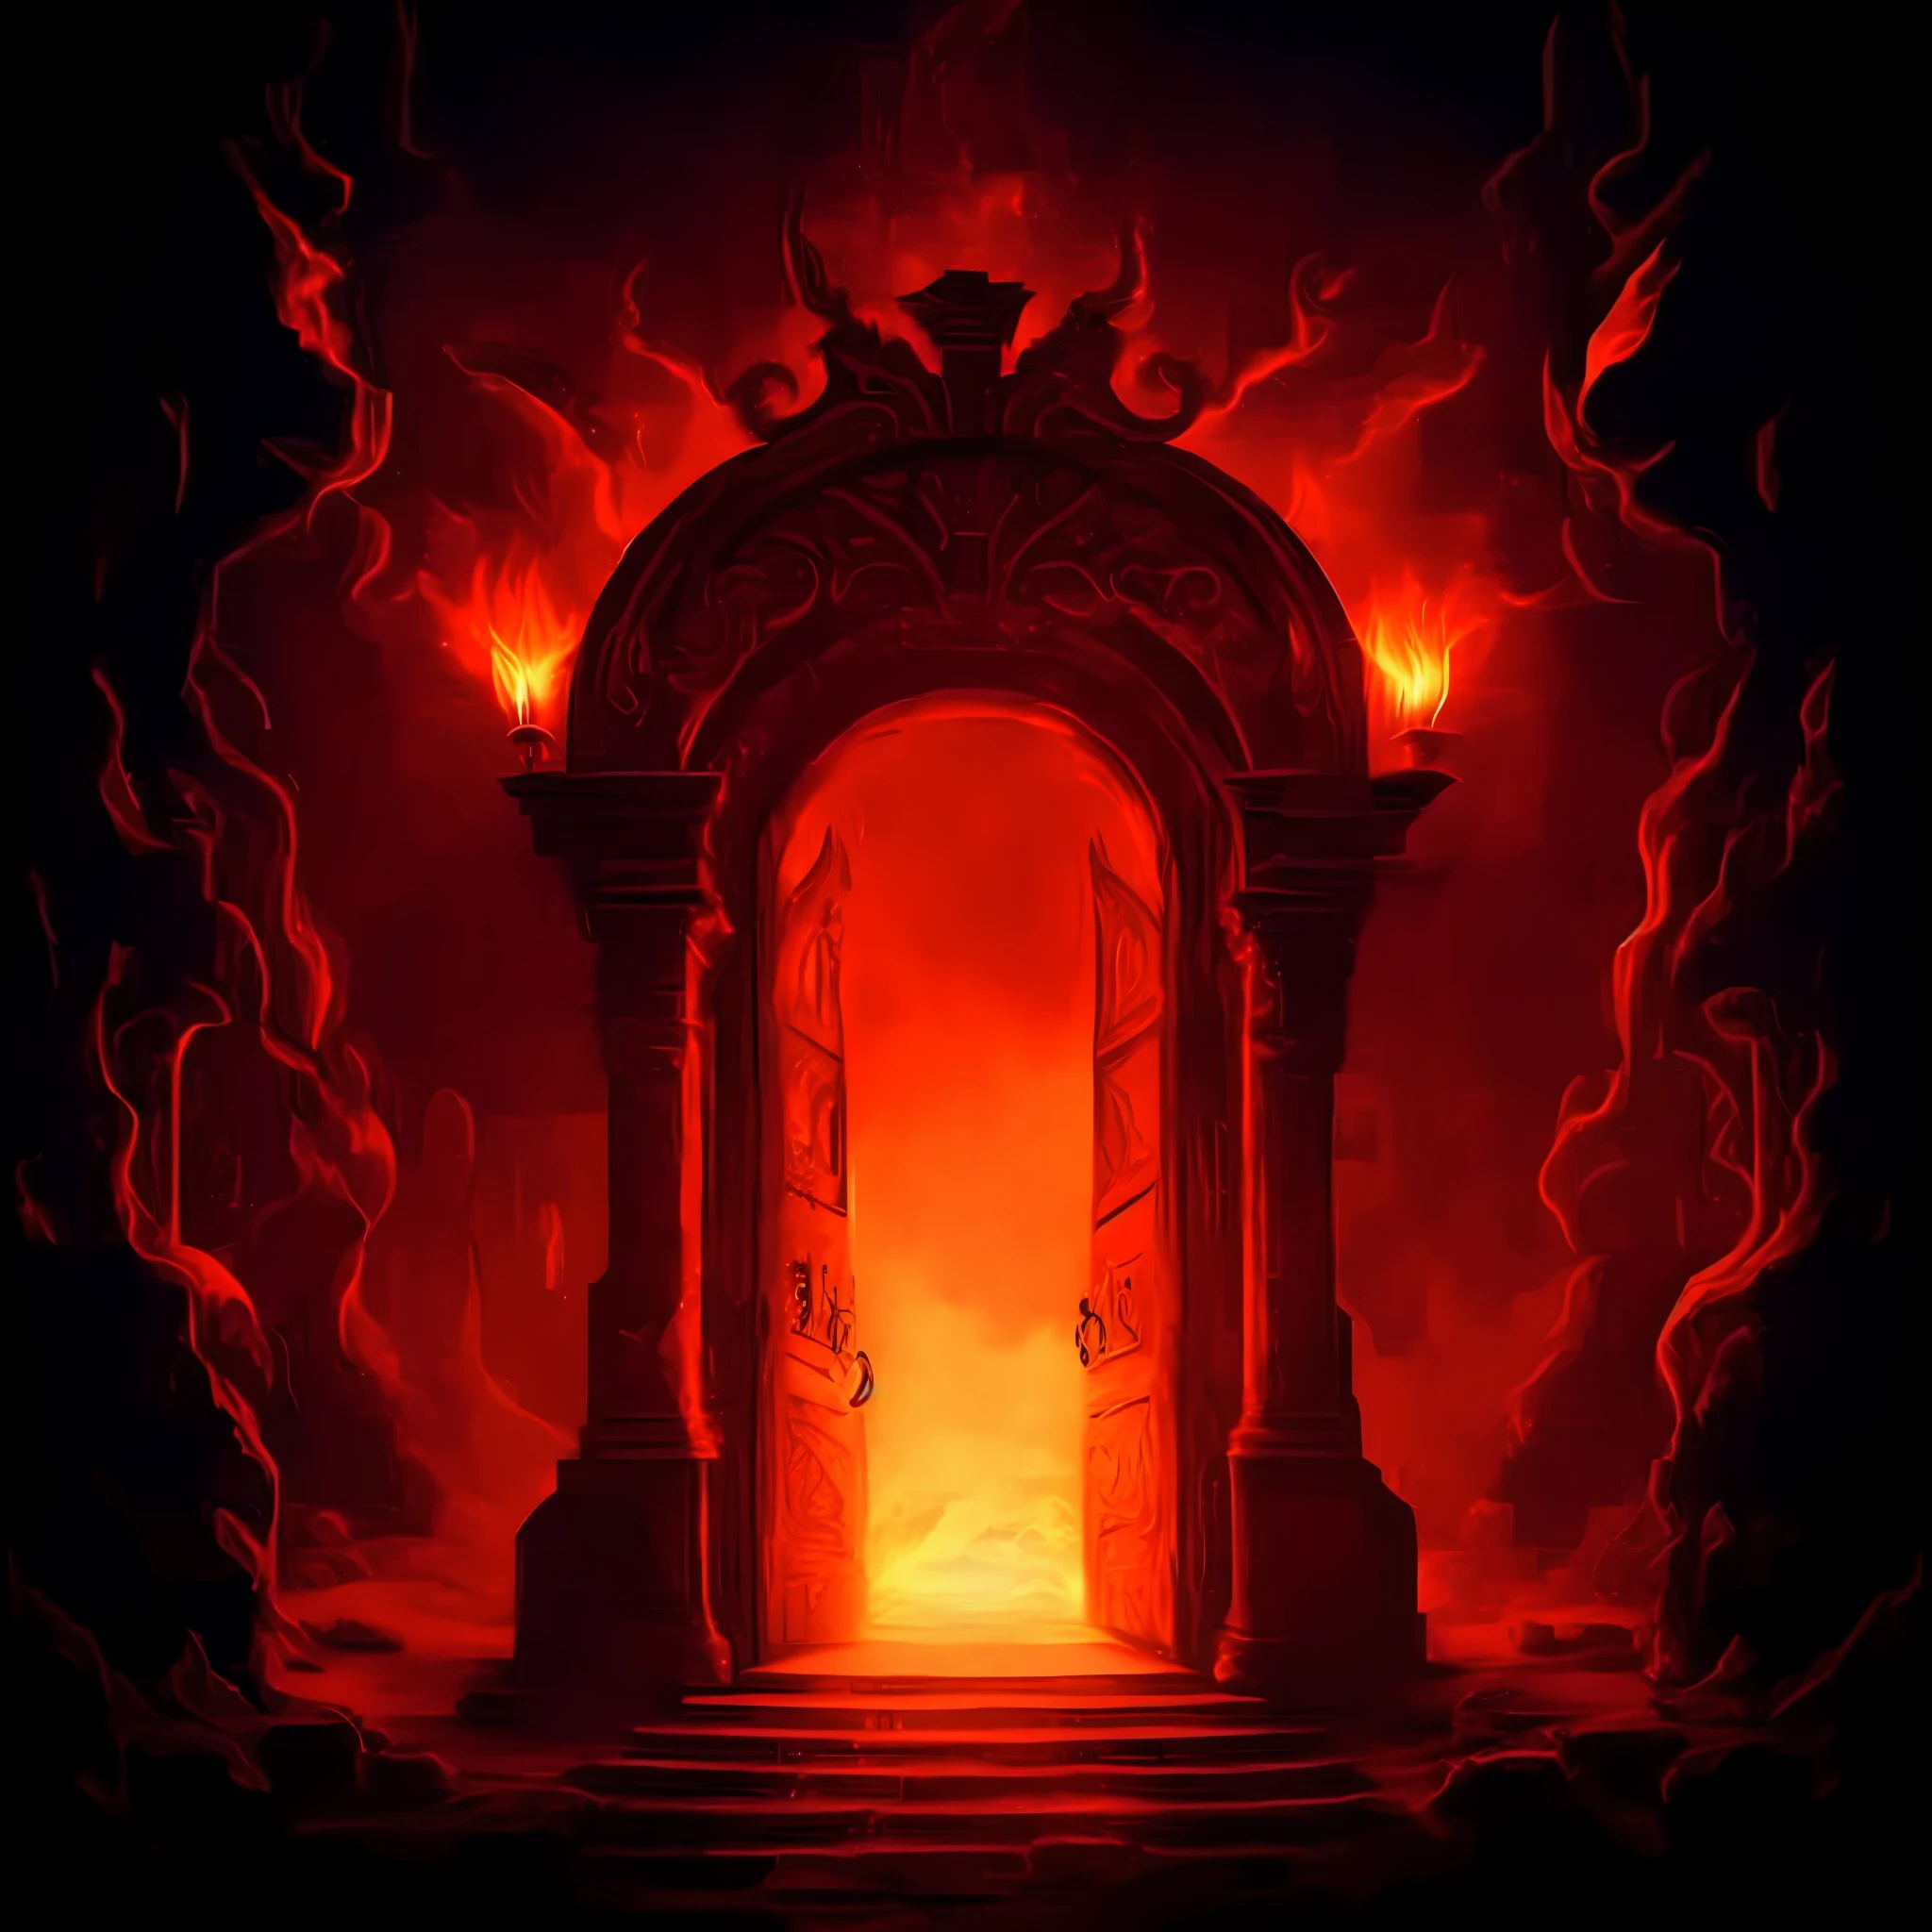 黑暗房間裡的一扇紅色防火門，火冒出來, 通往失落火焰領域的門戶, 地獄之門, 地獄之門, the 地獄之門, the 地獄之門, 地獄之門, 地獄之門, 地獄背景, 通往空靈境界的門戶, 研究地狱裂隙门户, 通往深處的門戶